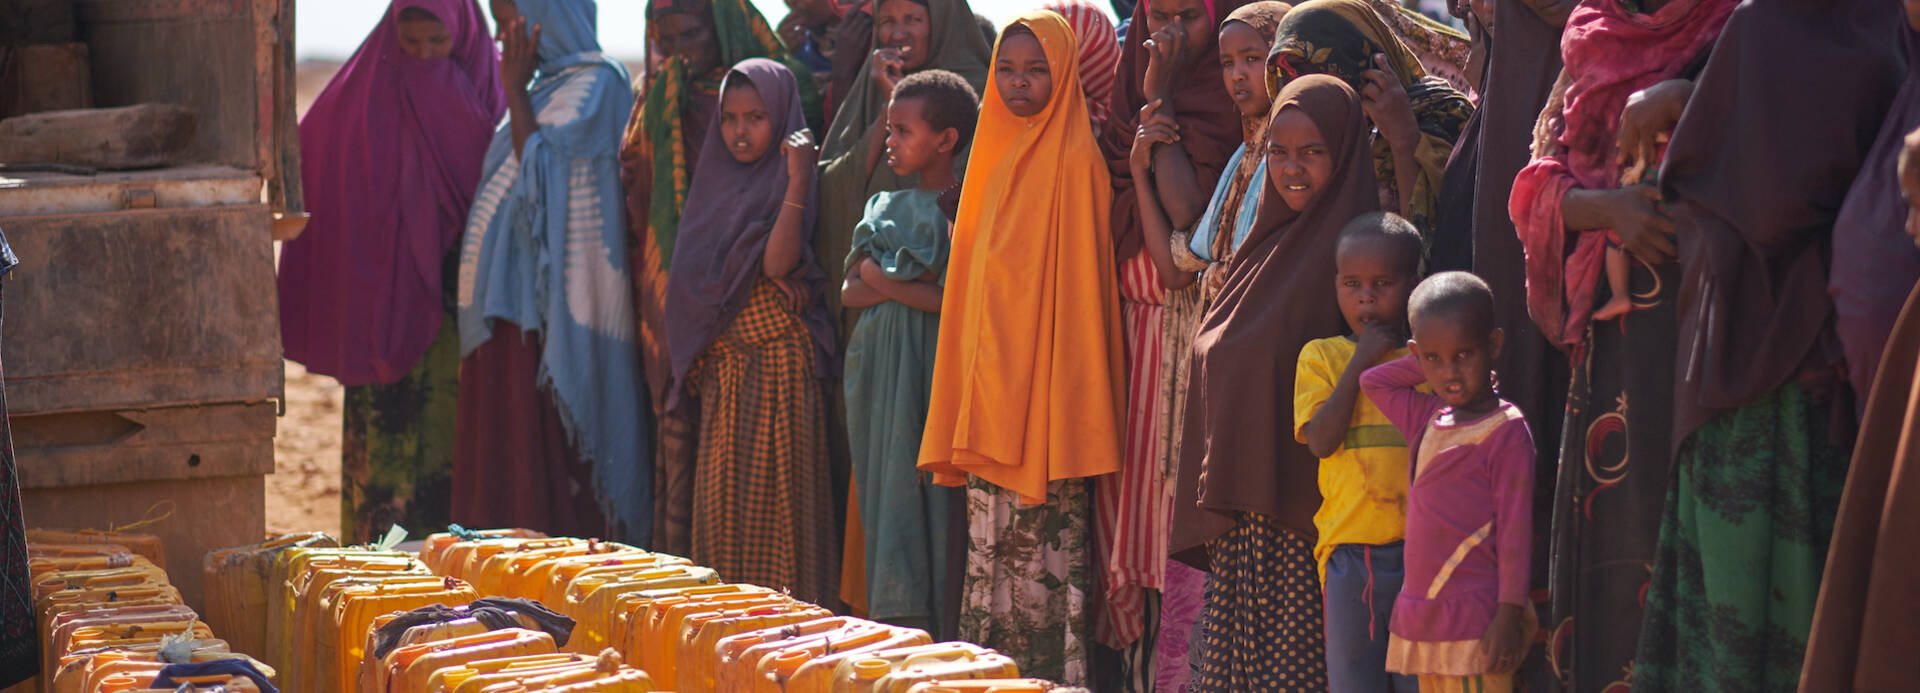 Menschen in Somalia warten mit ihren Kanistern auf sauberes Wasser aus Wassertank.